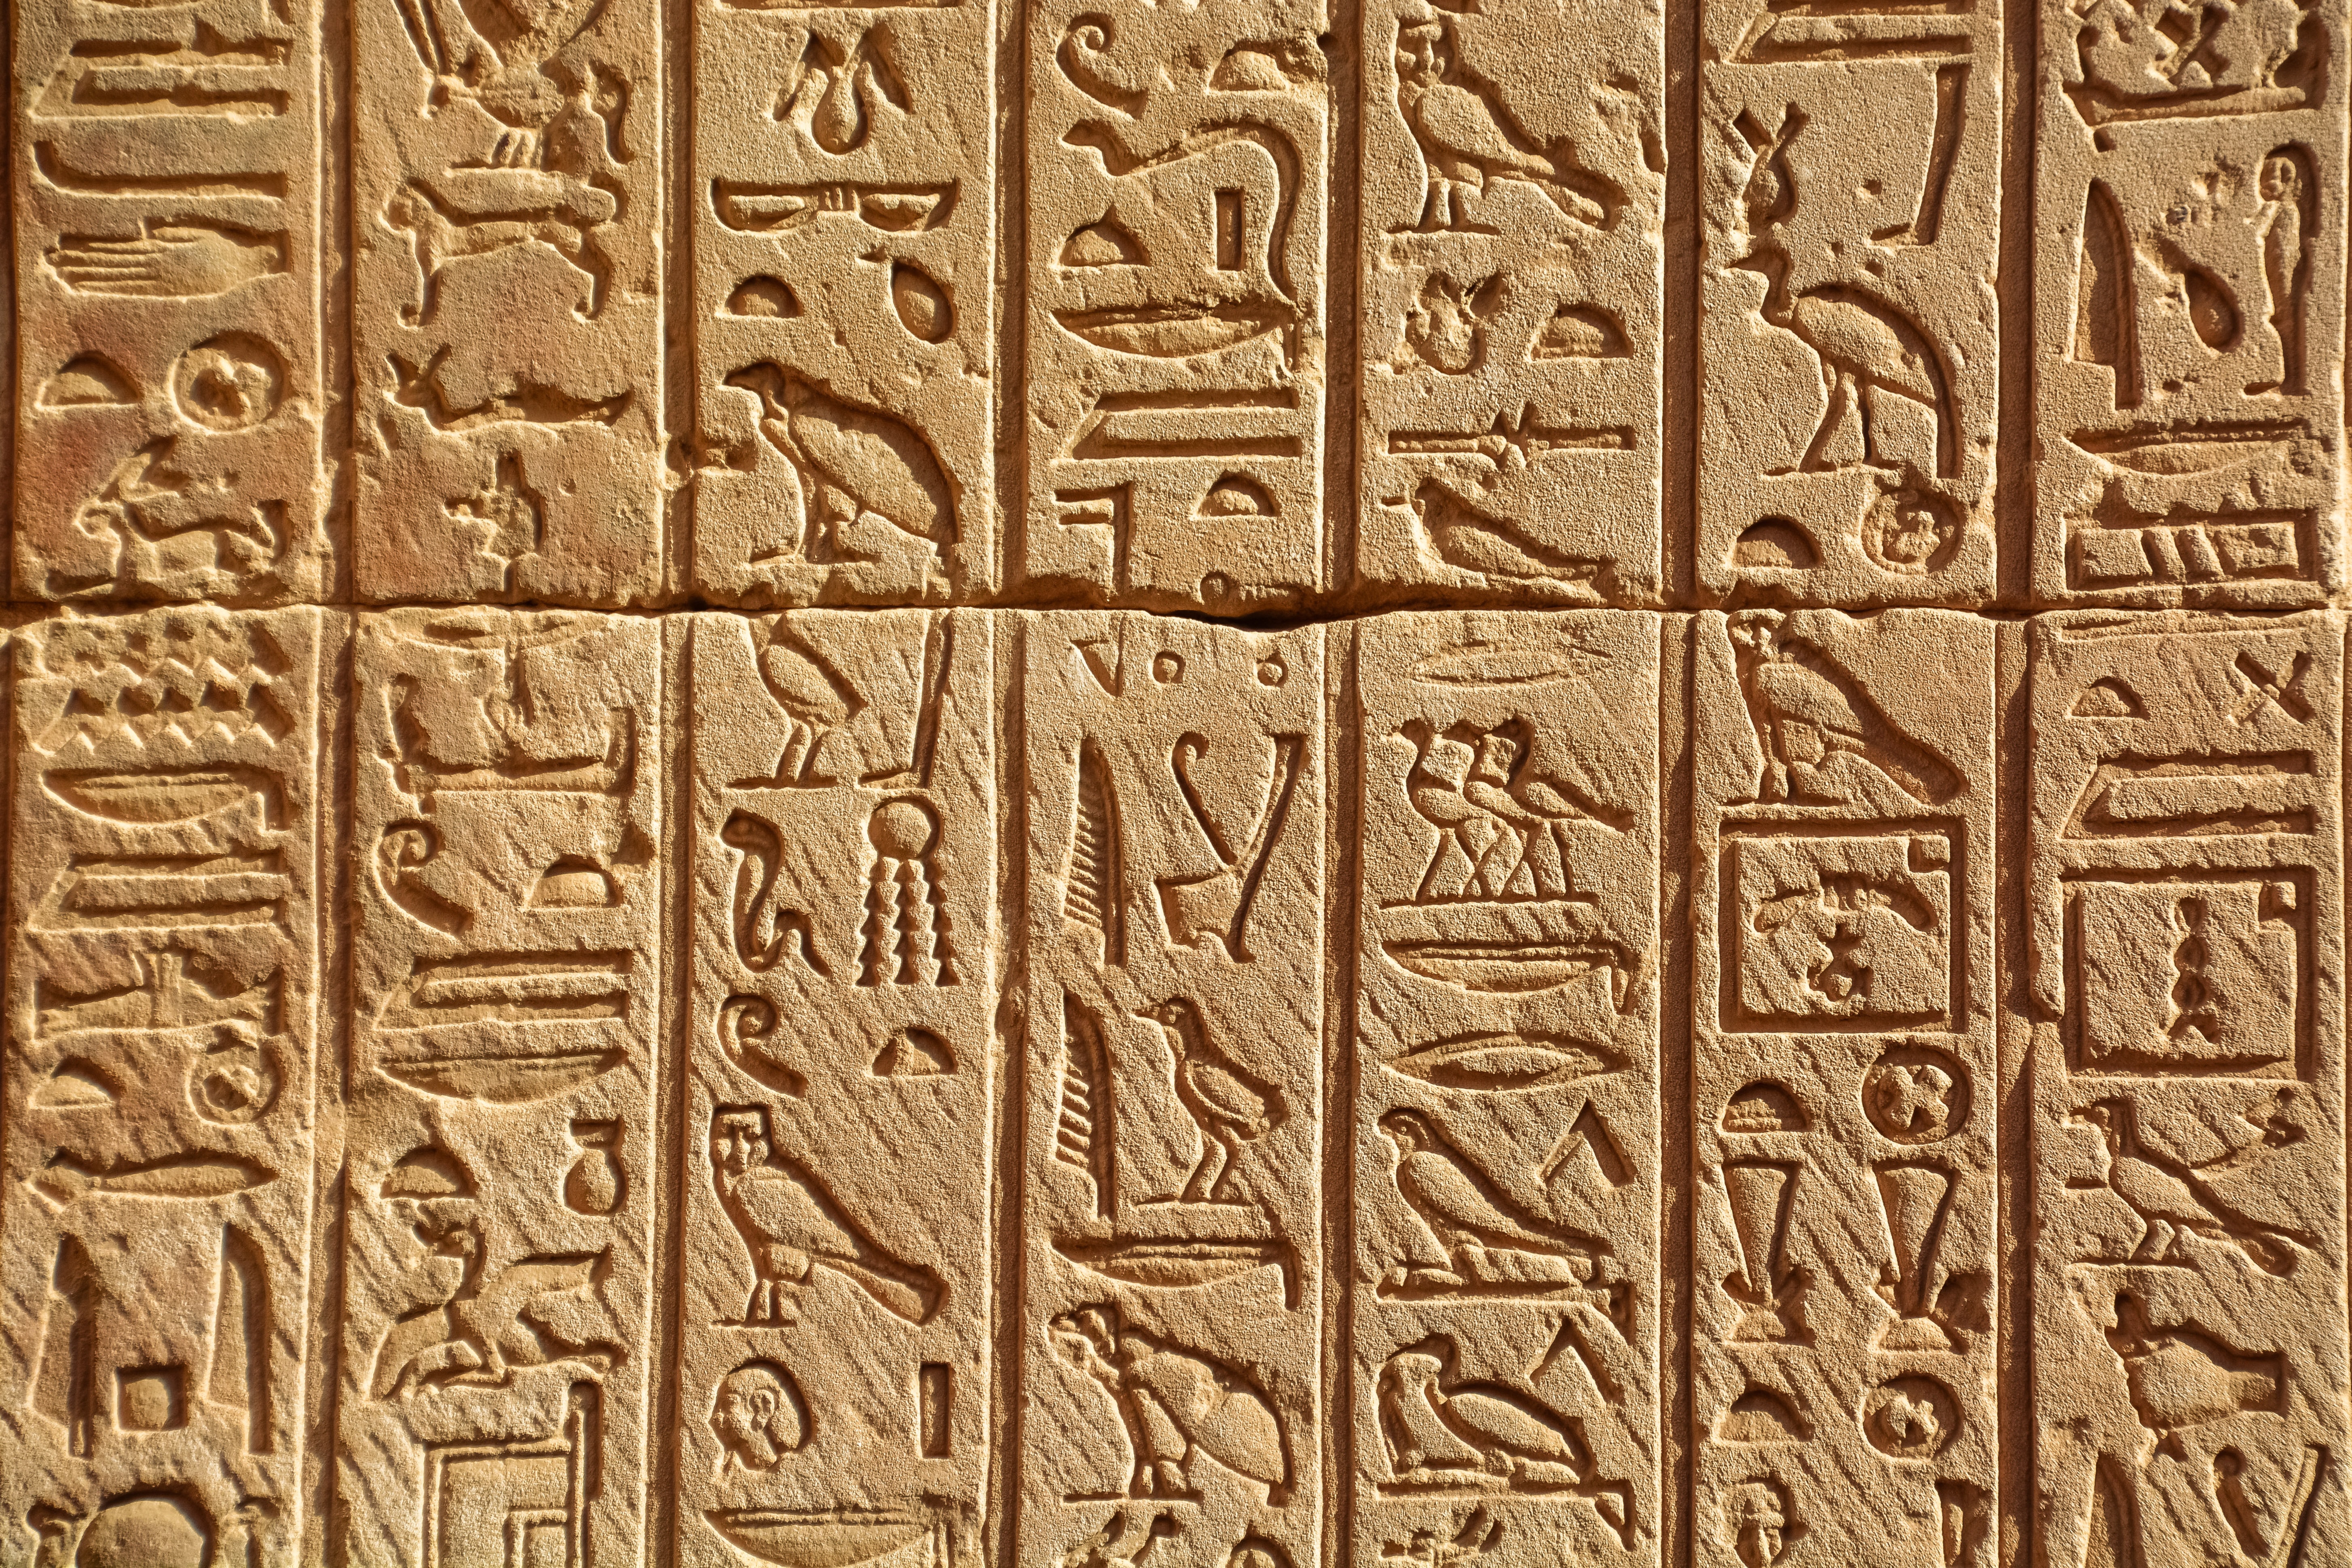 Египет первый появился. Иероглифическая письменность Египта. Иероглифика древнего Египта. Идеограммы древнего Египта. Письмена древнего Египта.